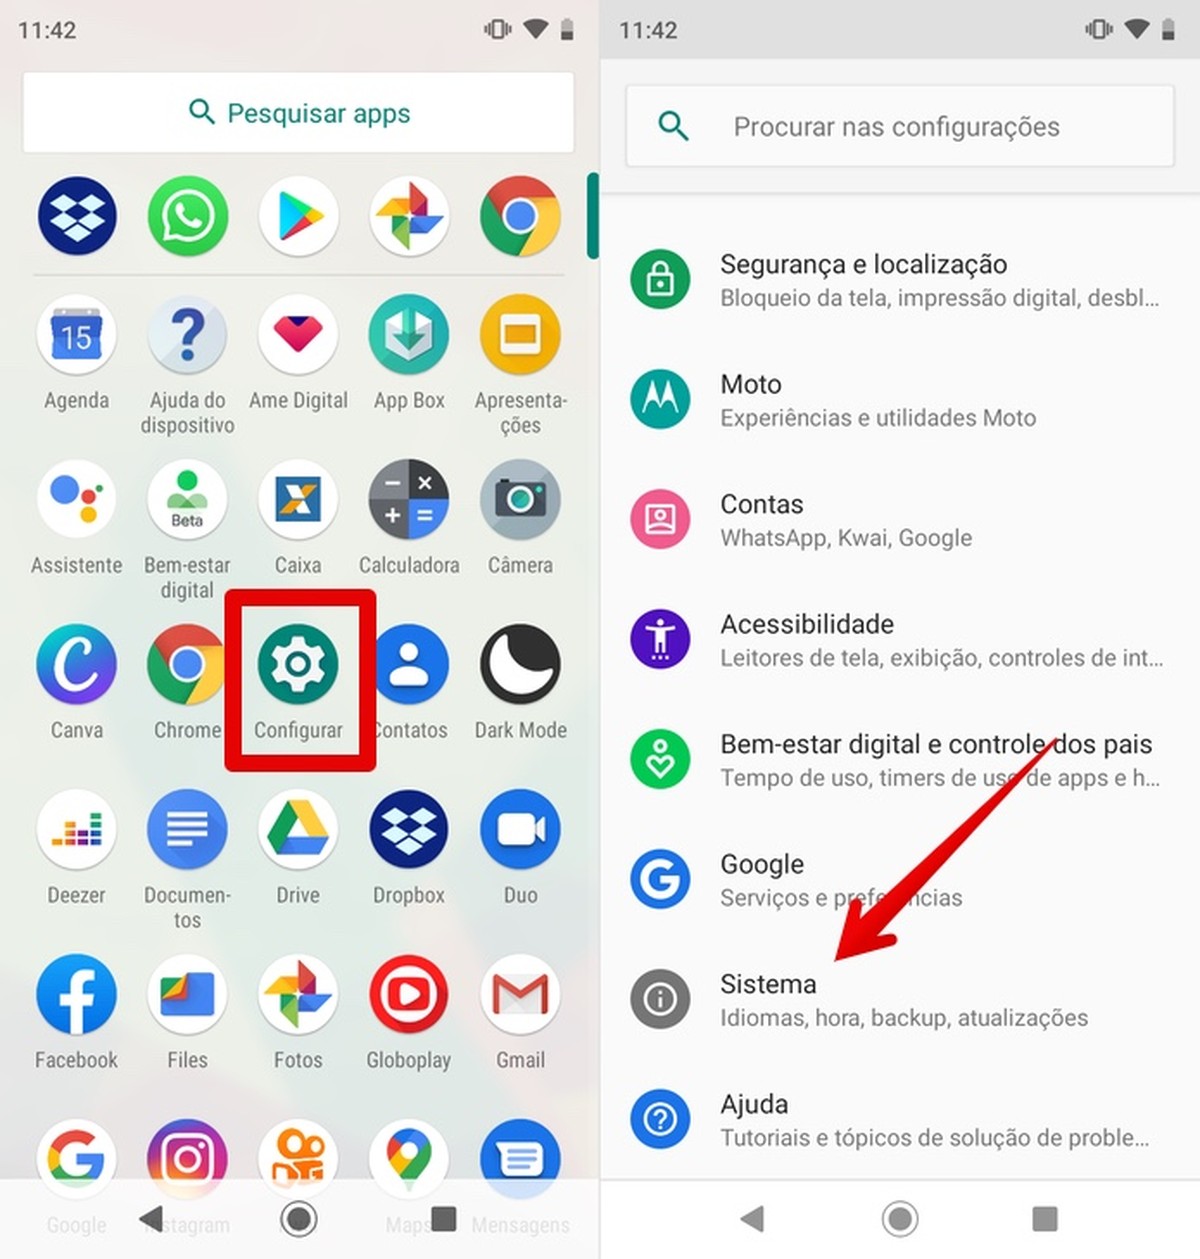 Google Play Games é atualizado e agora permite login automático no Android  - Olhar Digital